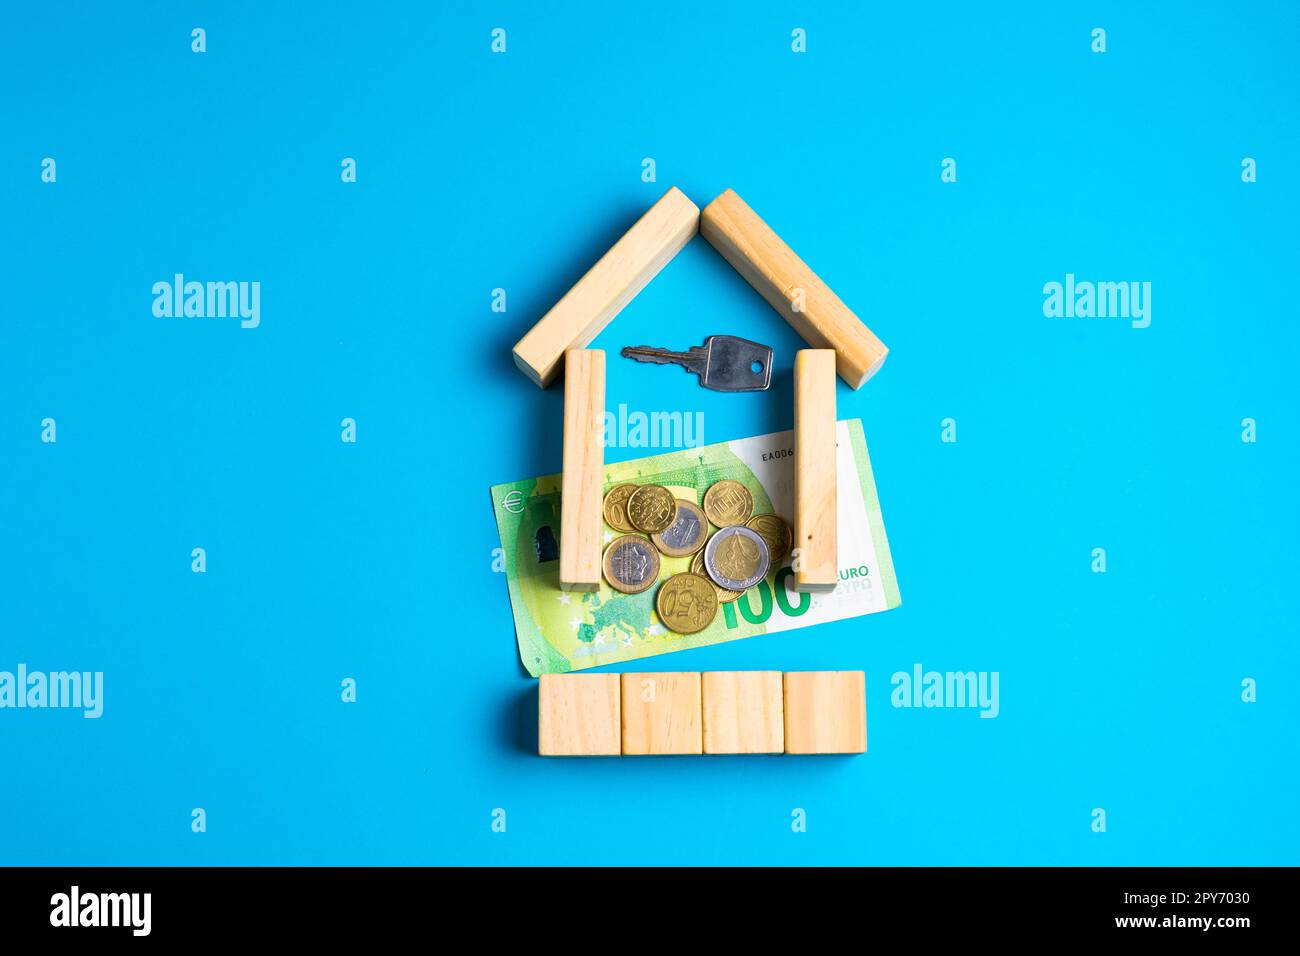 Spielzeughaus aus Holz mit blauen Schlüsseln. Leeres Leerzeichen, um Text oder etwas anderes einzufügen. Stockfoto